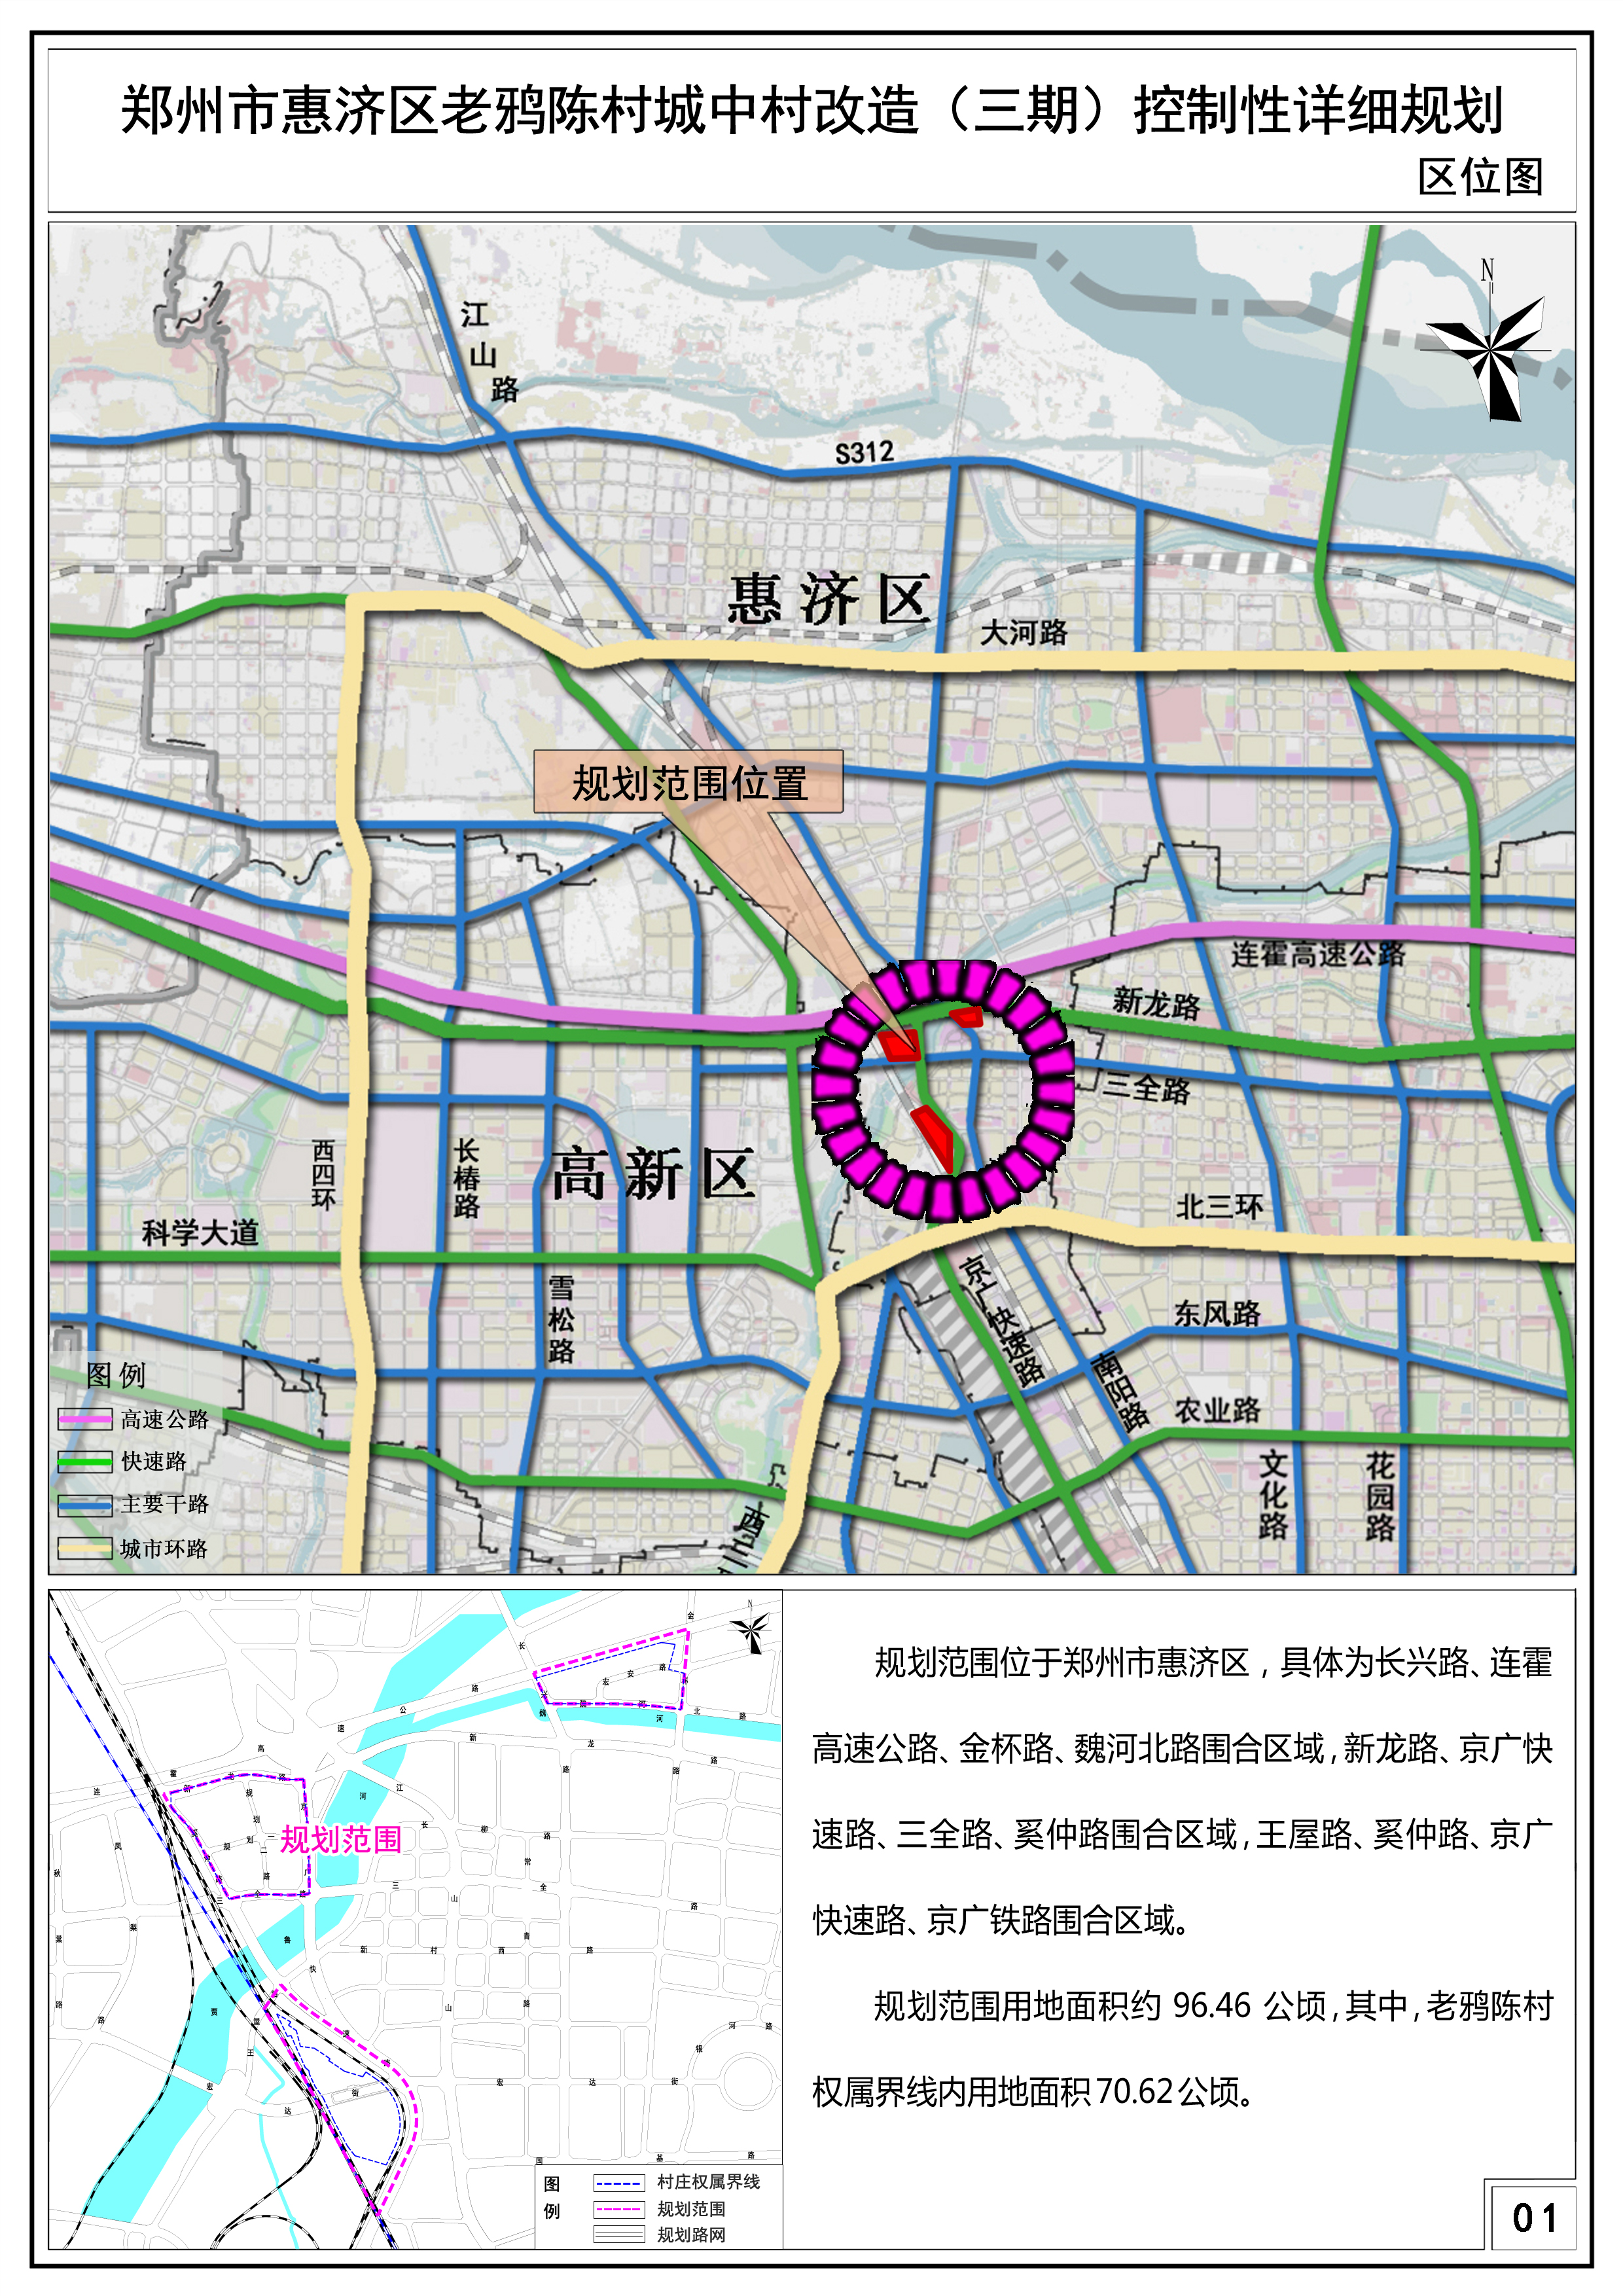 郑州市惠济区老鸦陈村城中村改造（三期）控制性详细规划